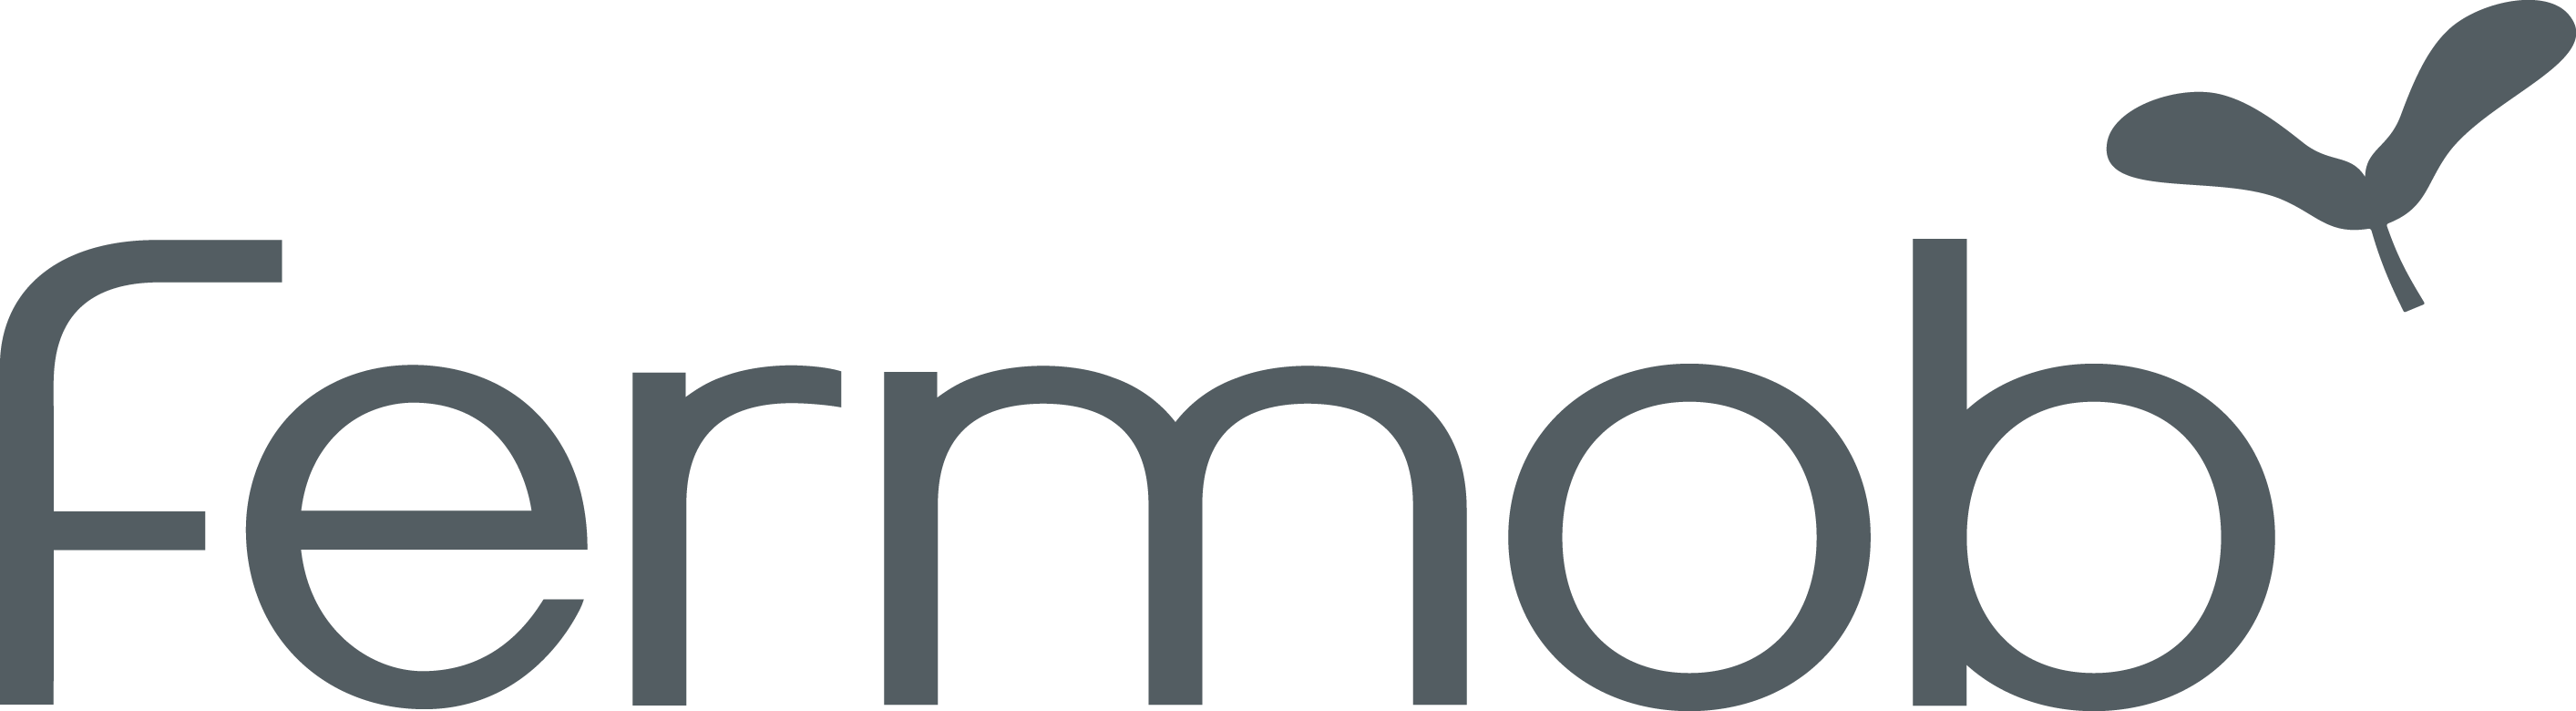 Blog - Contact - Fermob Logo Clipart (2827x780), Png Download